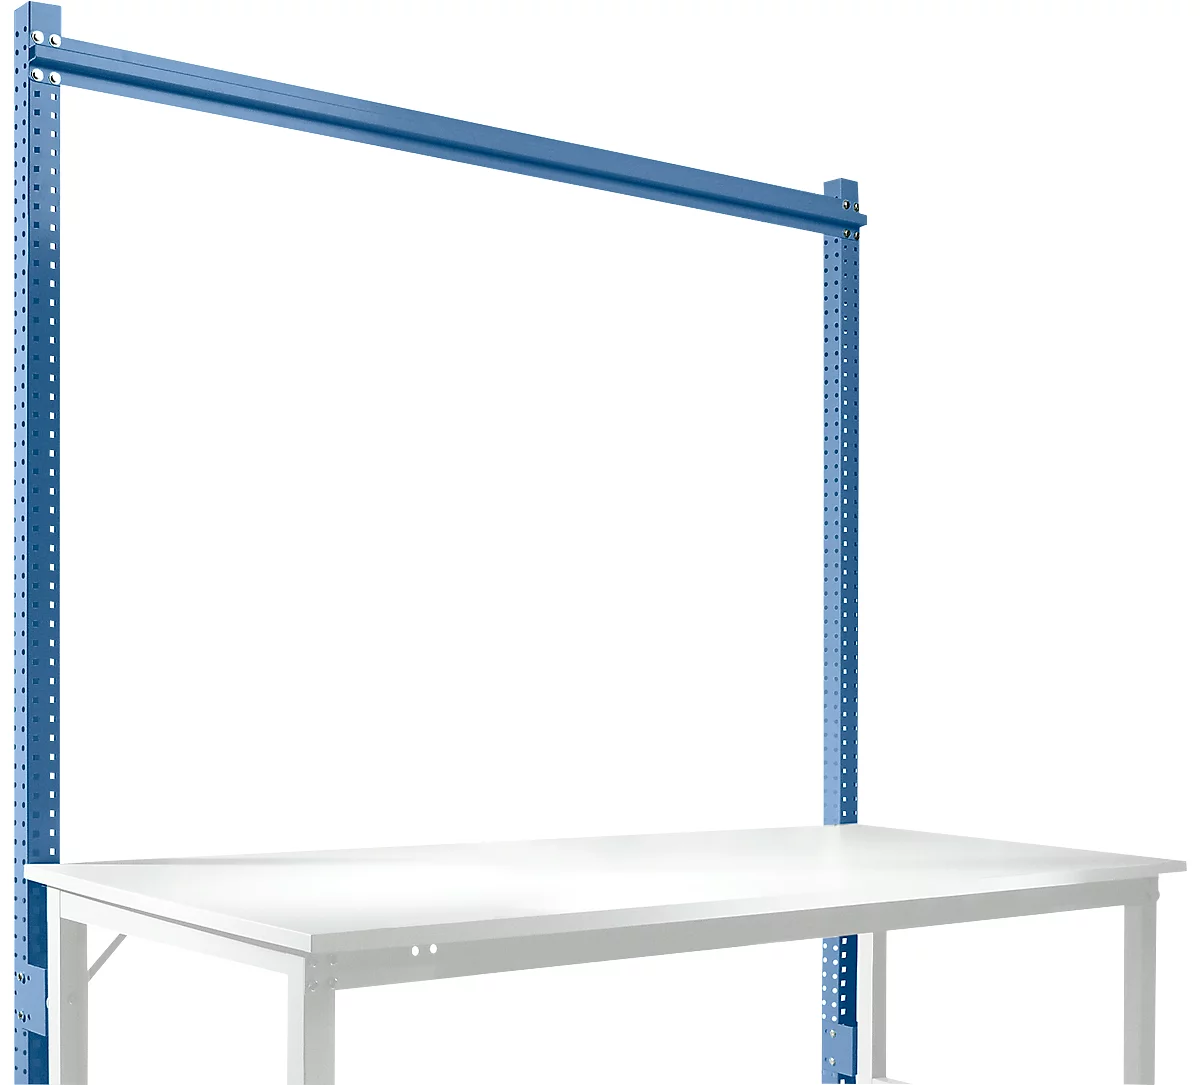 Estructura pórtica adicional, mesa básica STANDARD sistema mesa de trabajo/banco de trabajo UNIVERSAL/PROFI, 1750 mm, azul brillante